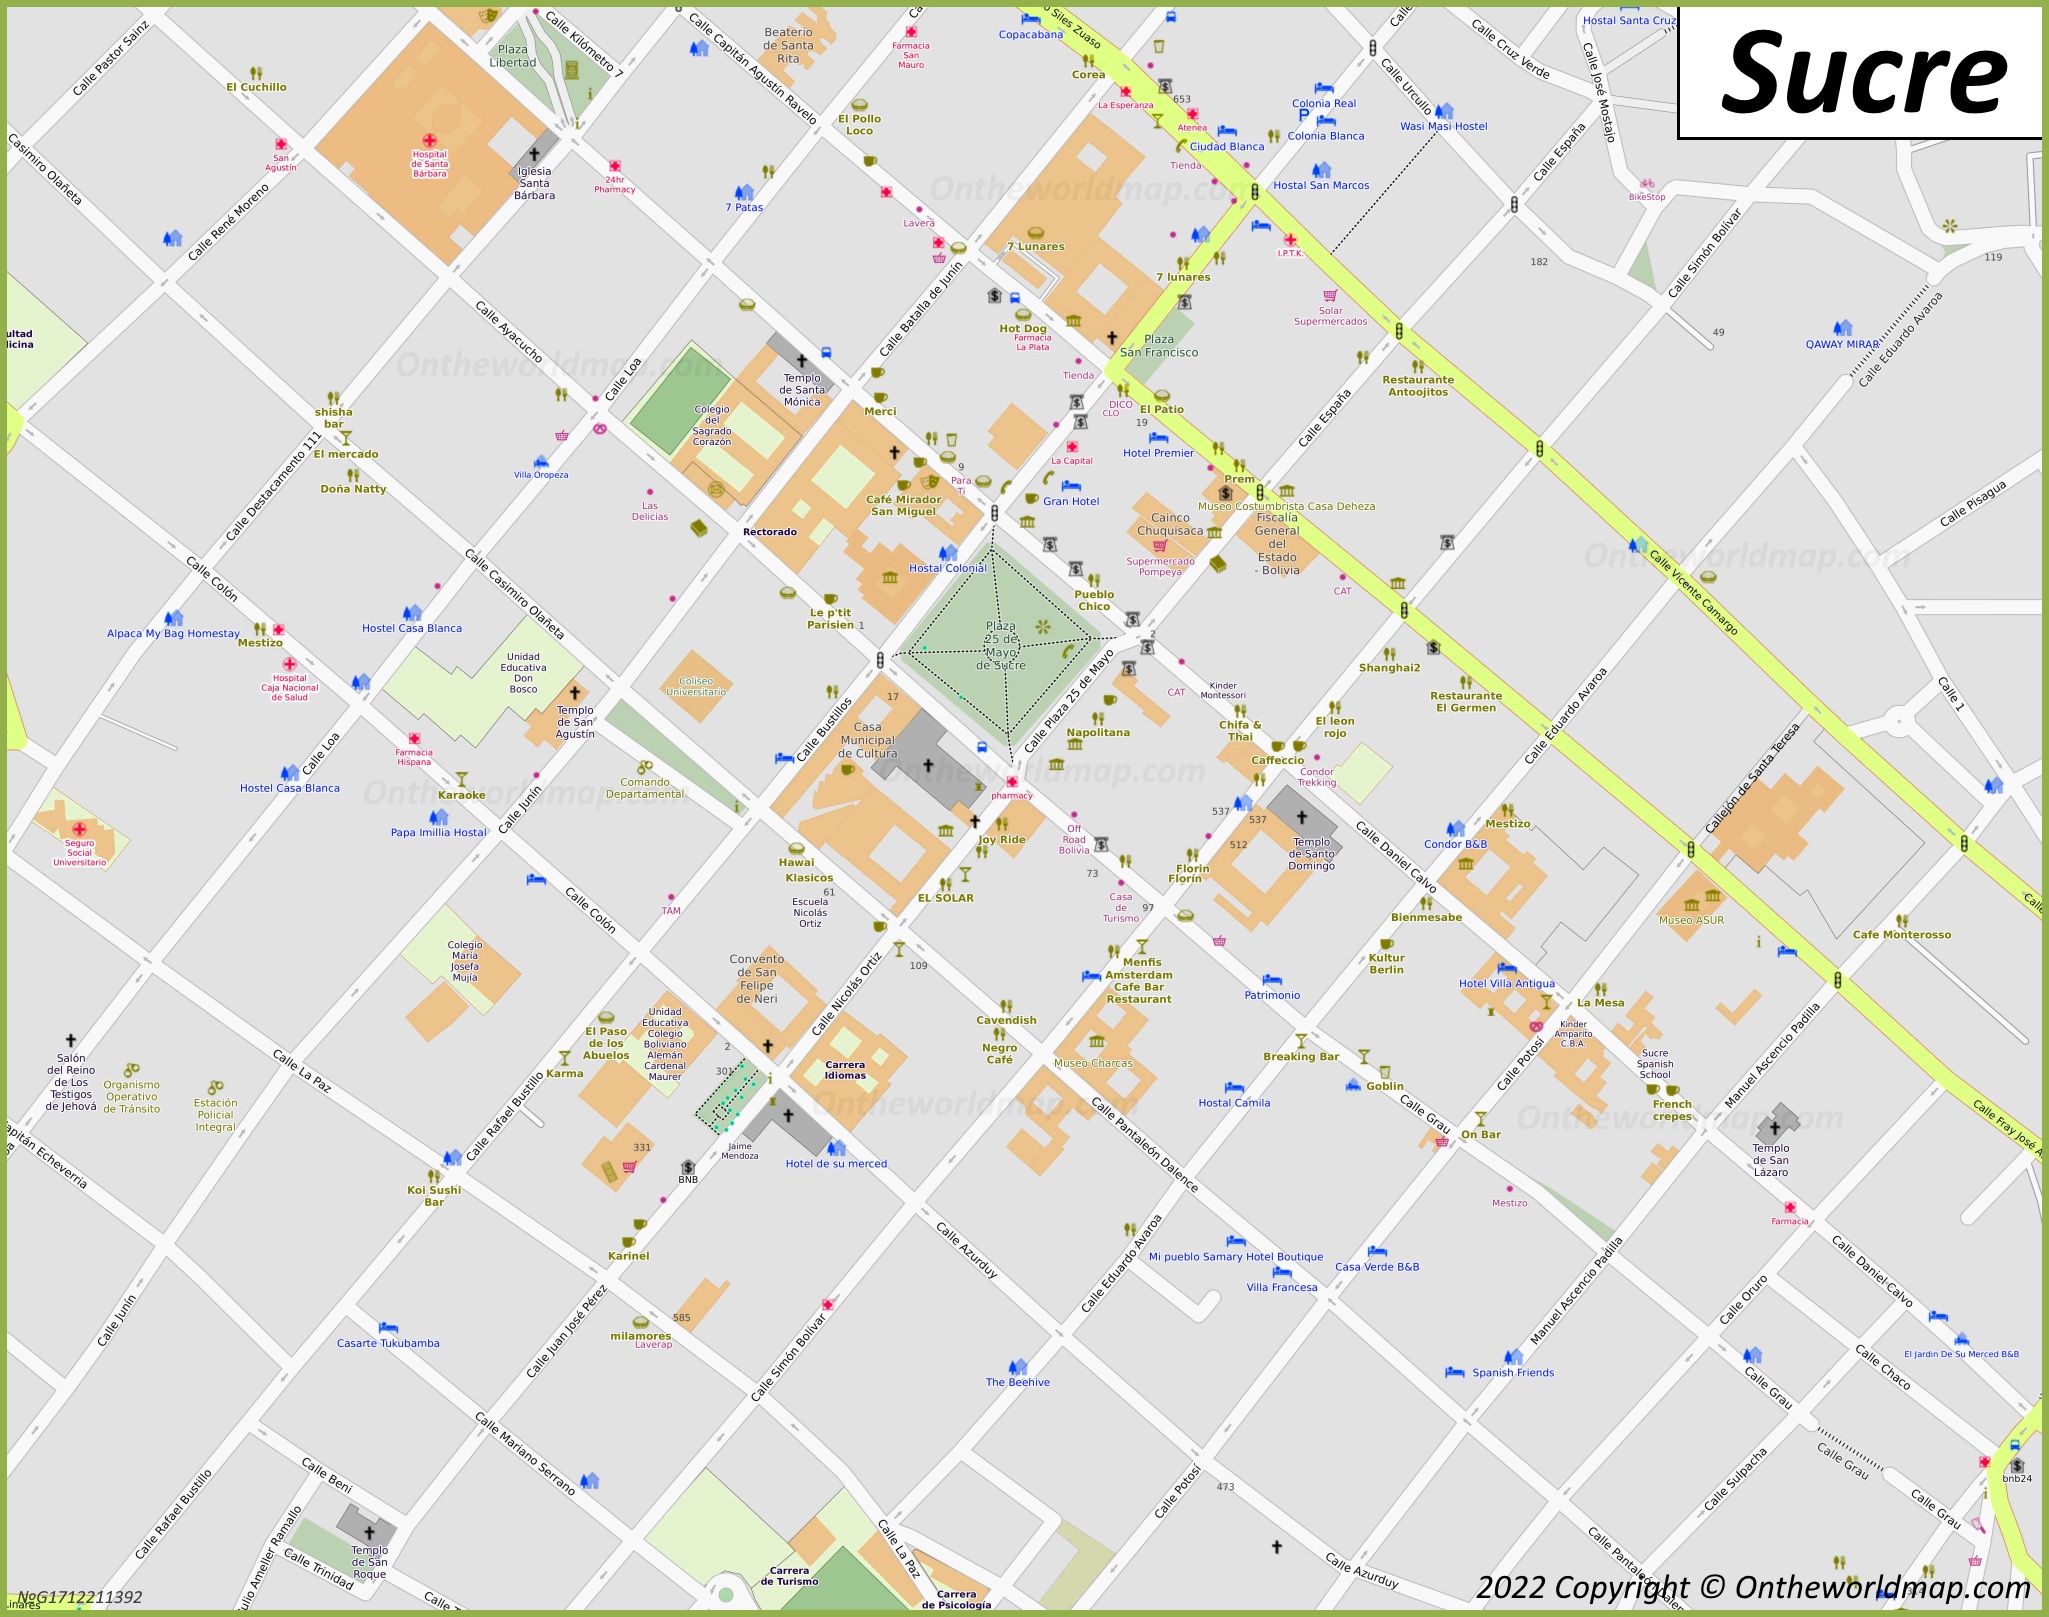 Sucre City Centre Map